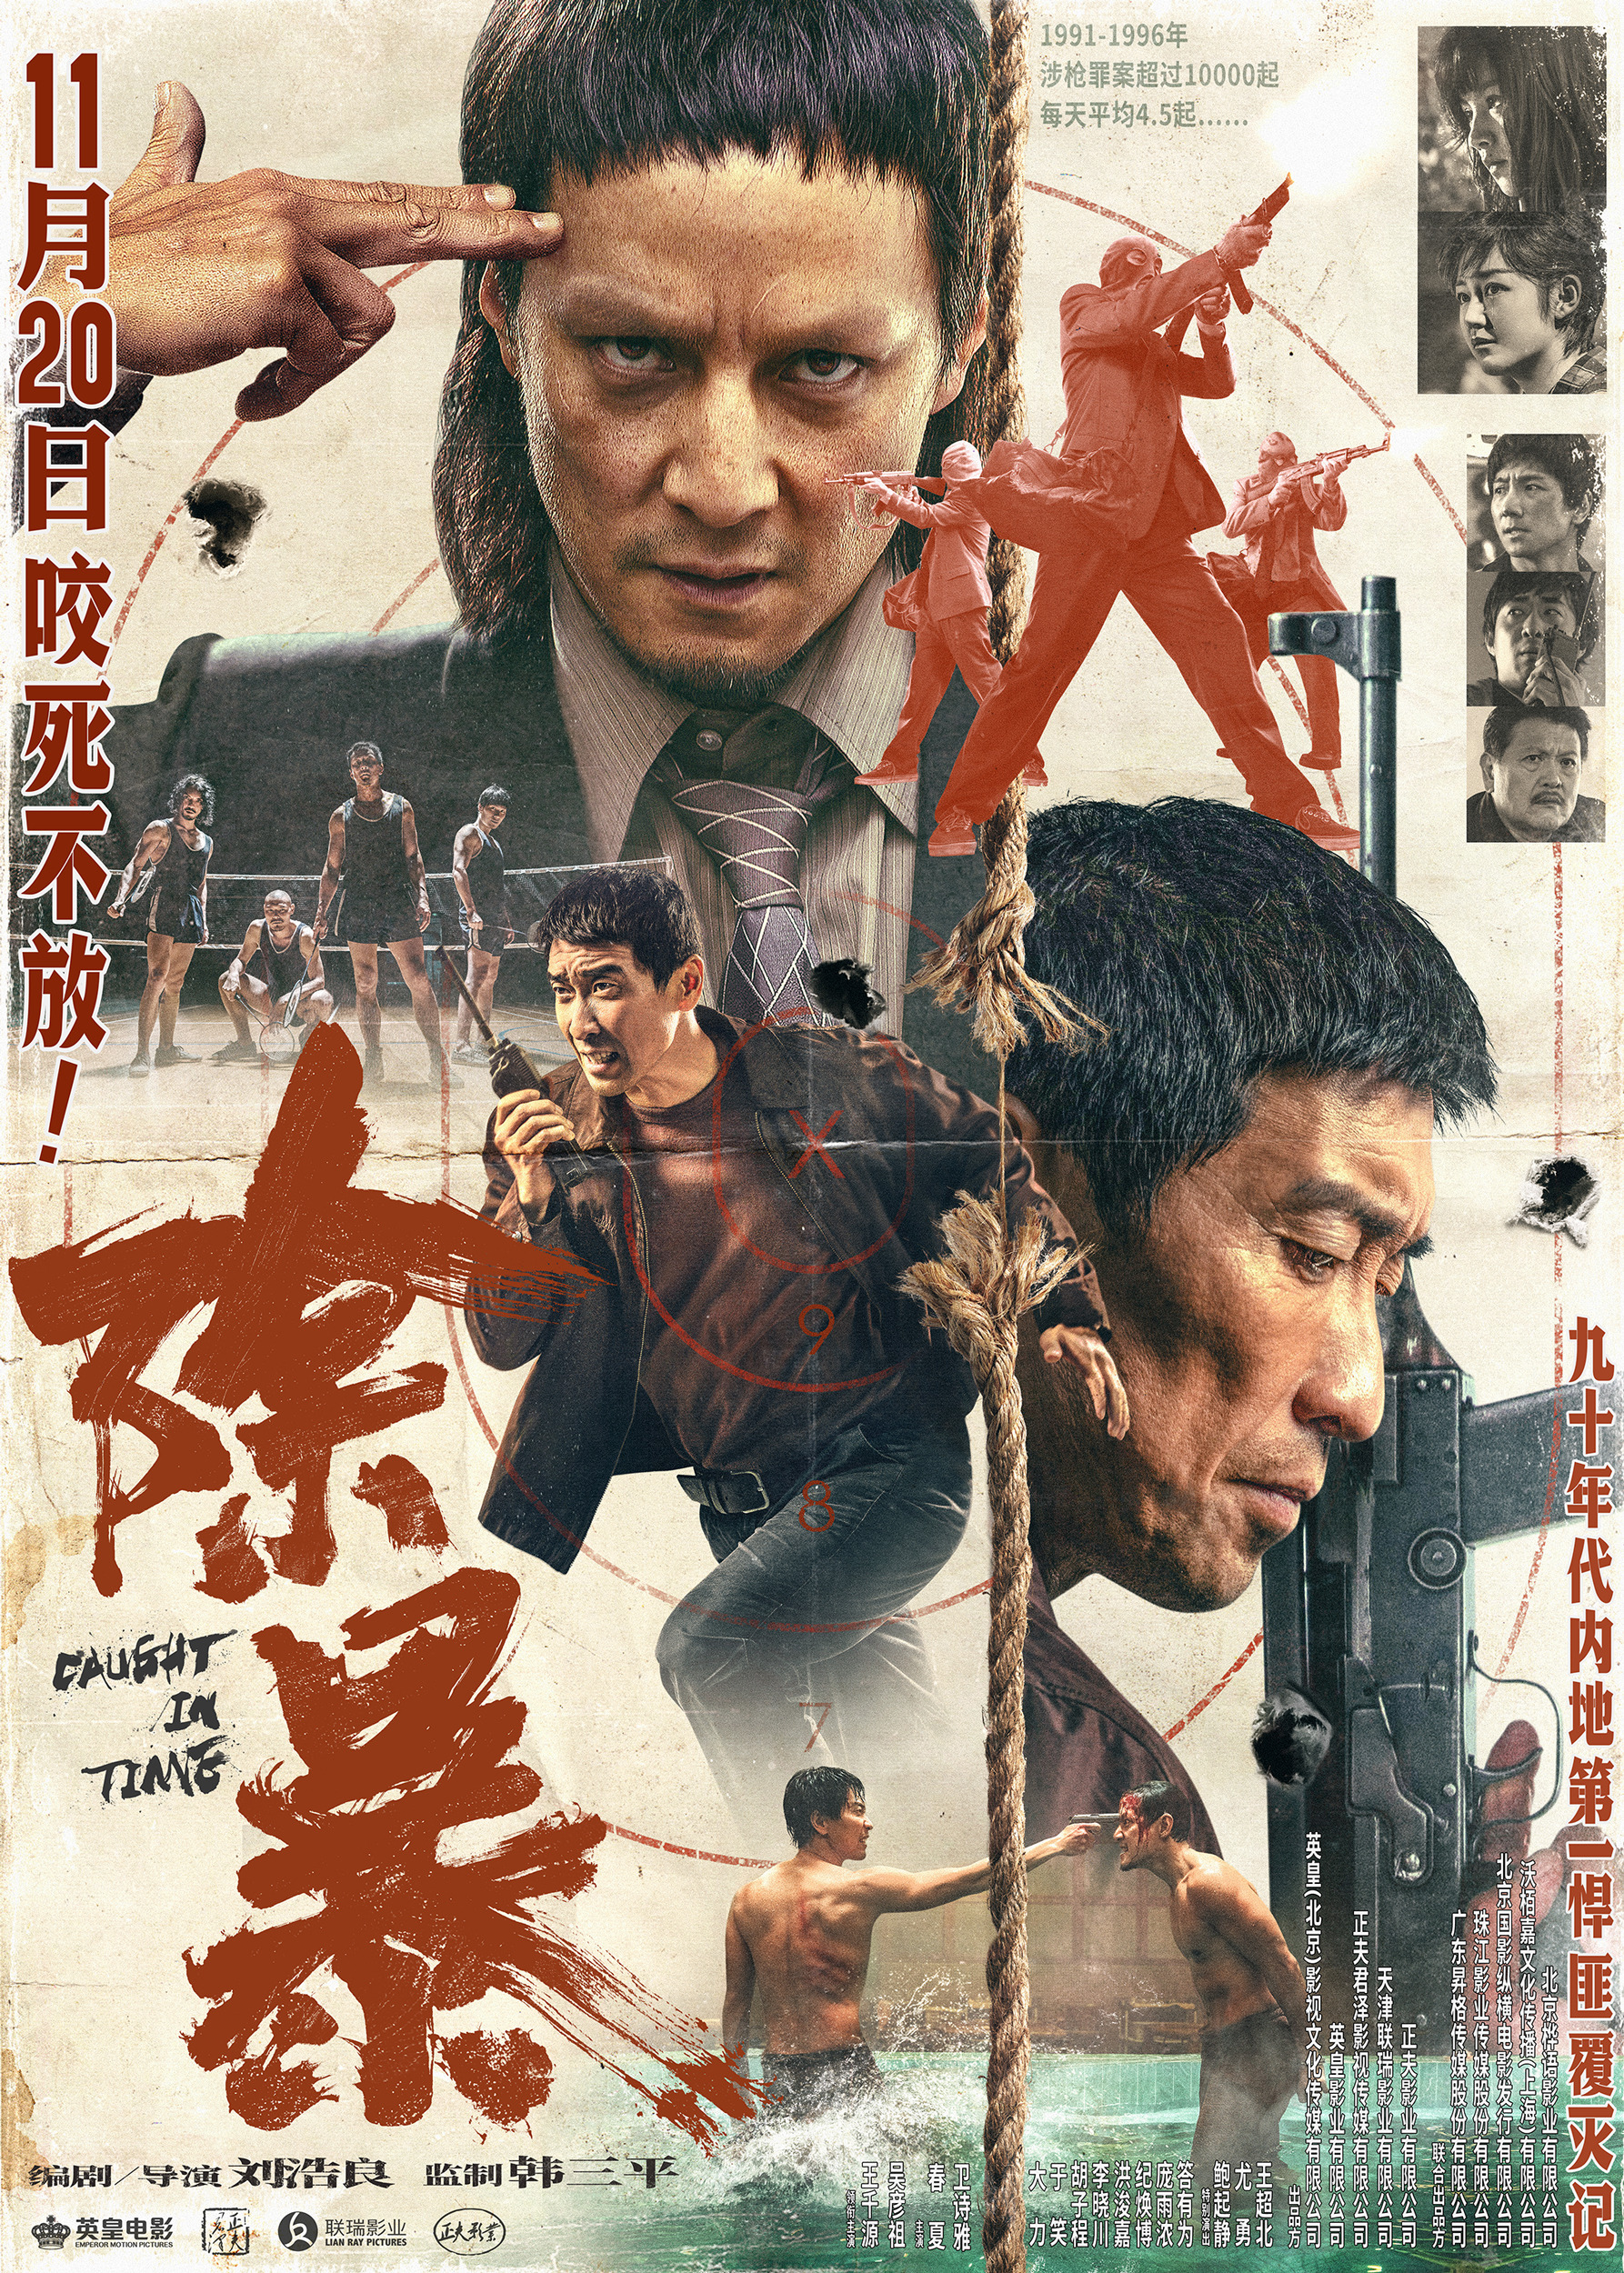 Mega Sized Movie Poster Image for Chu bao (#7 of 8)